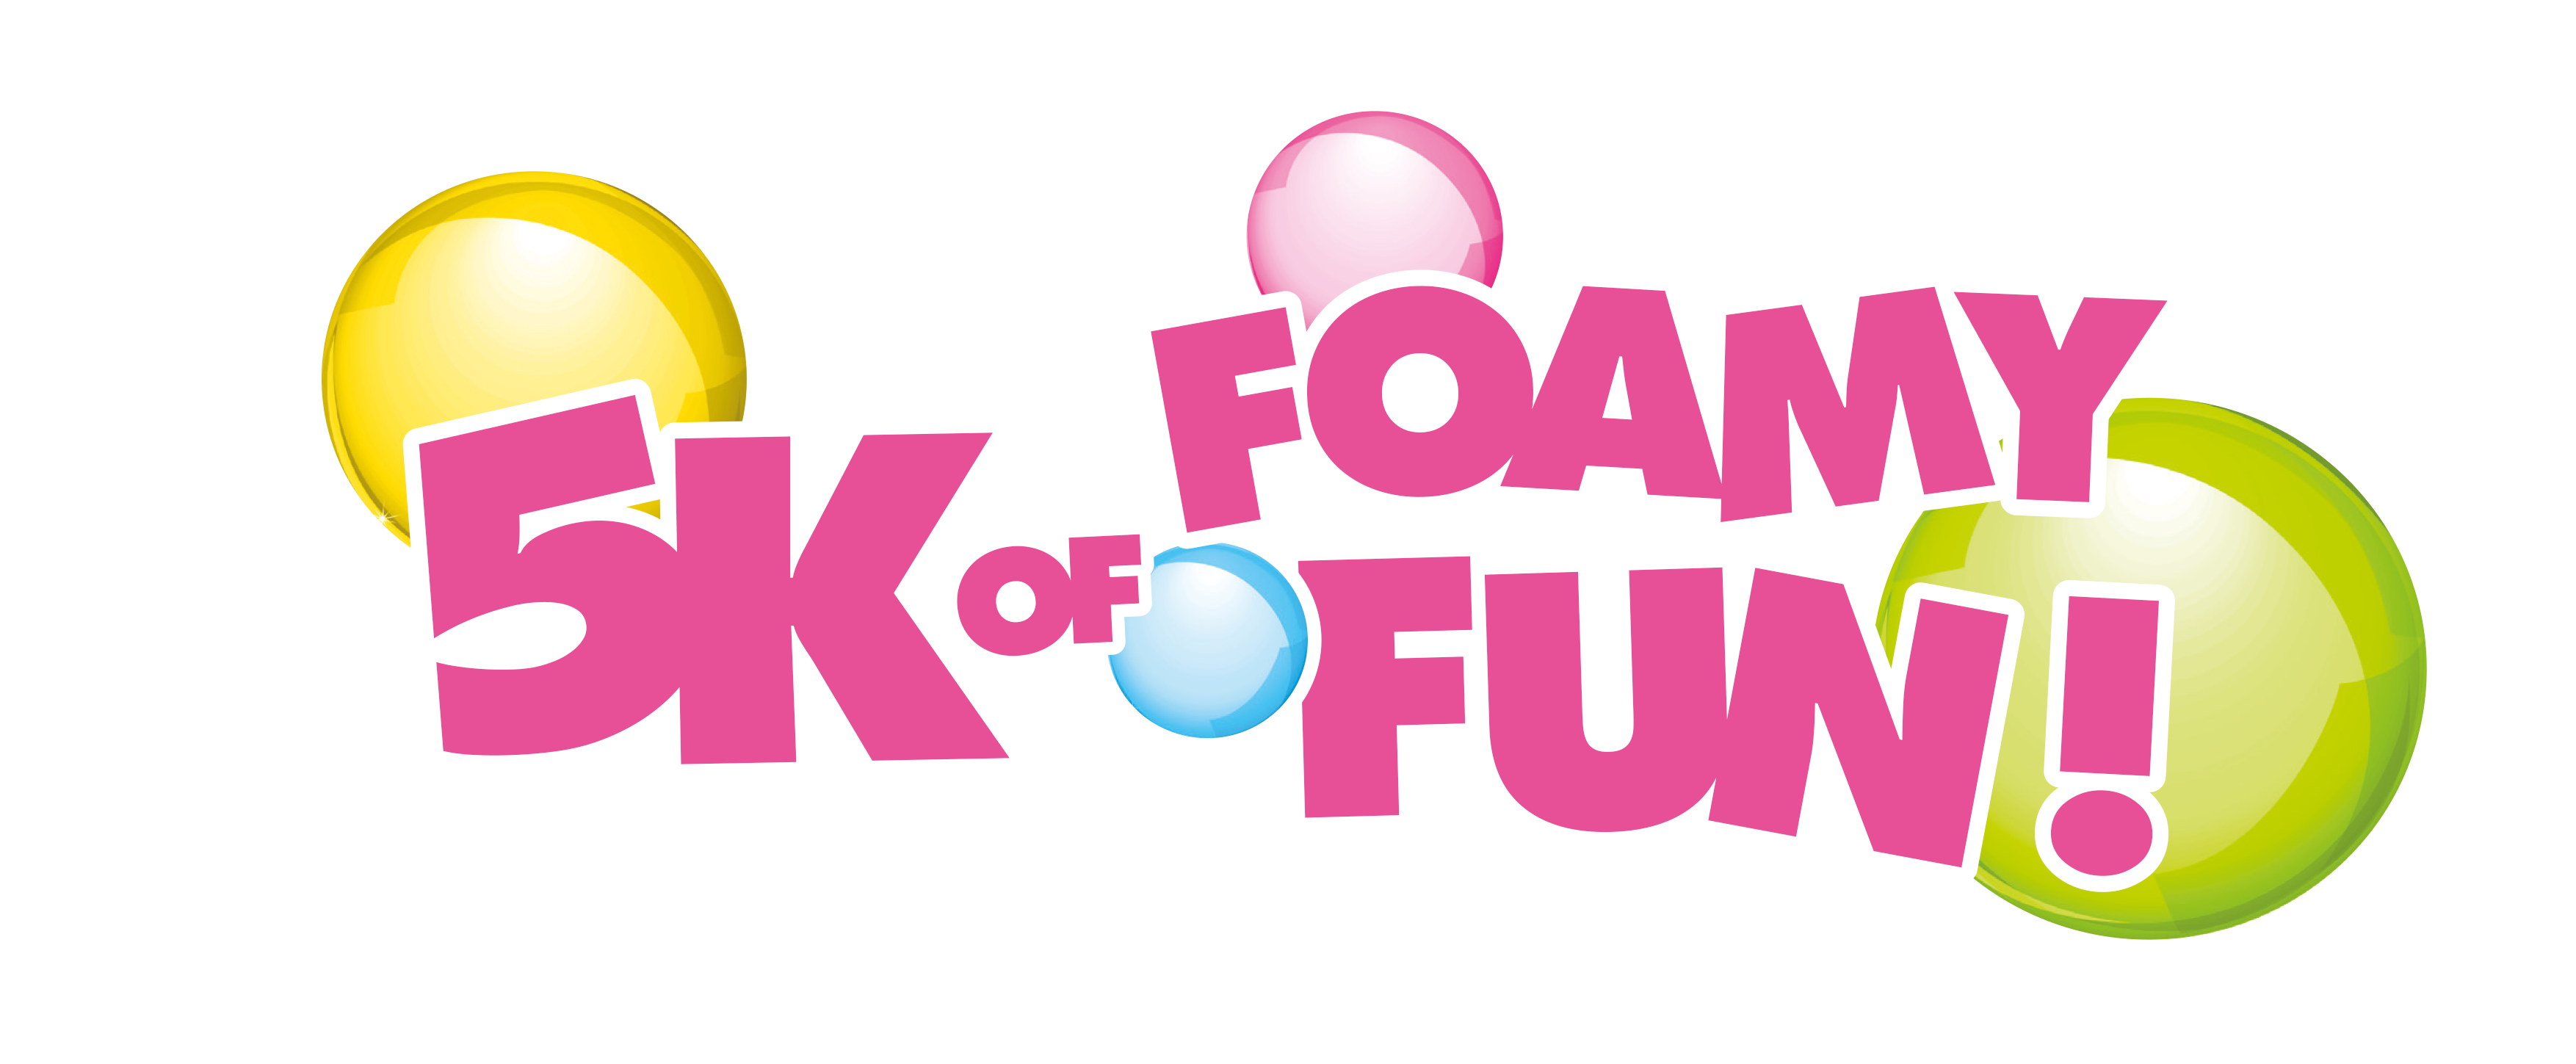 5k of foamy fun